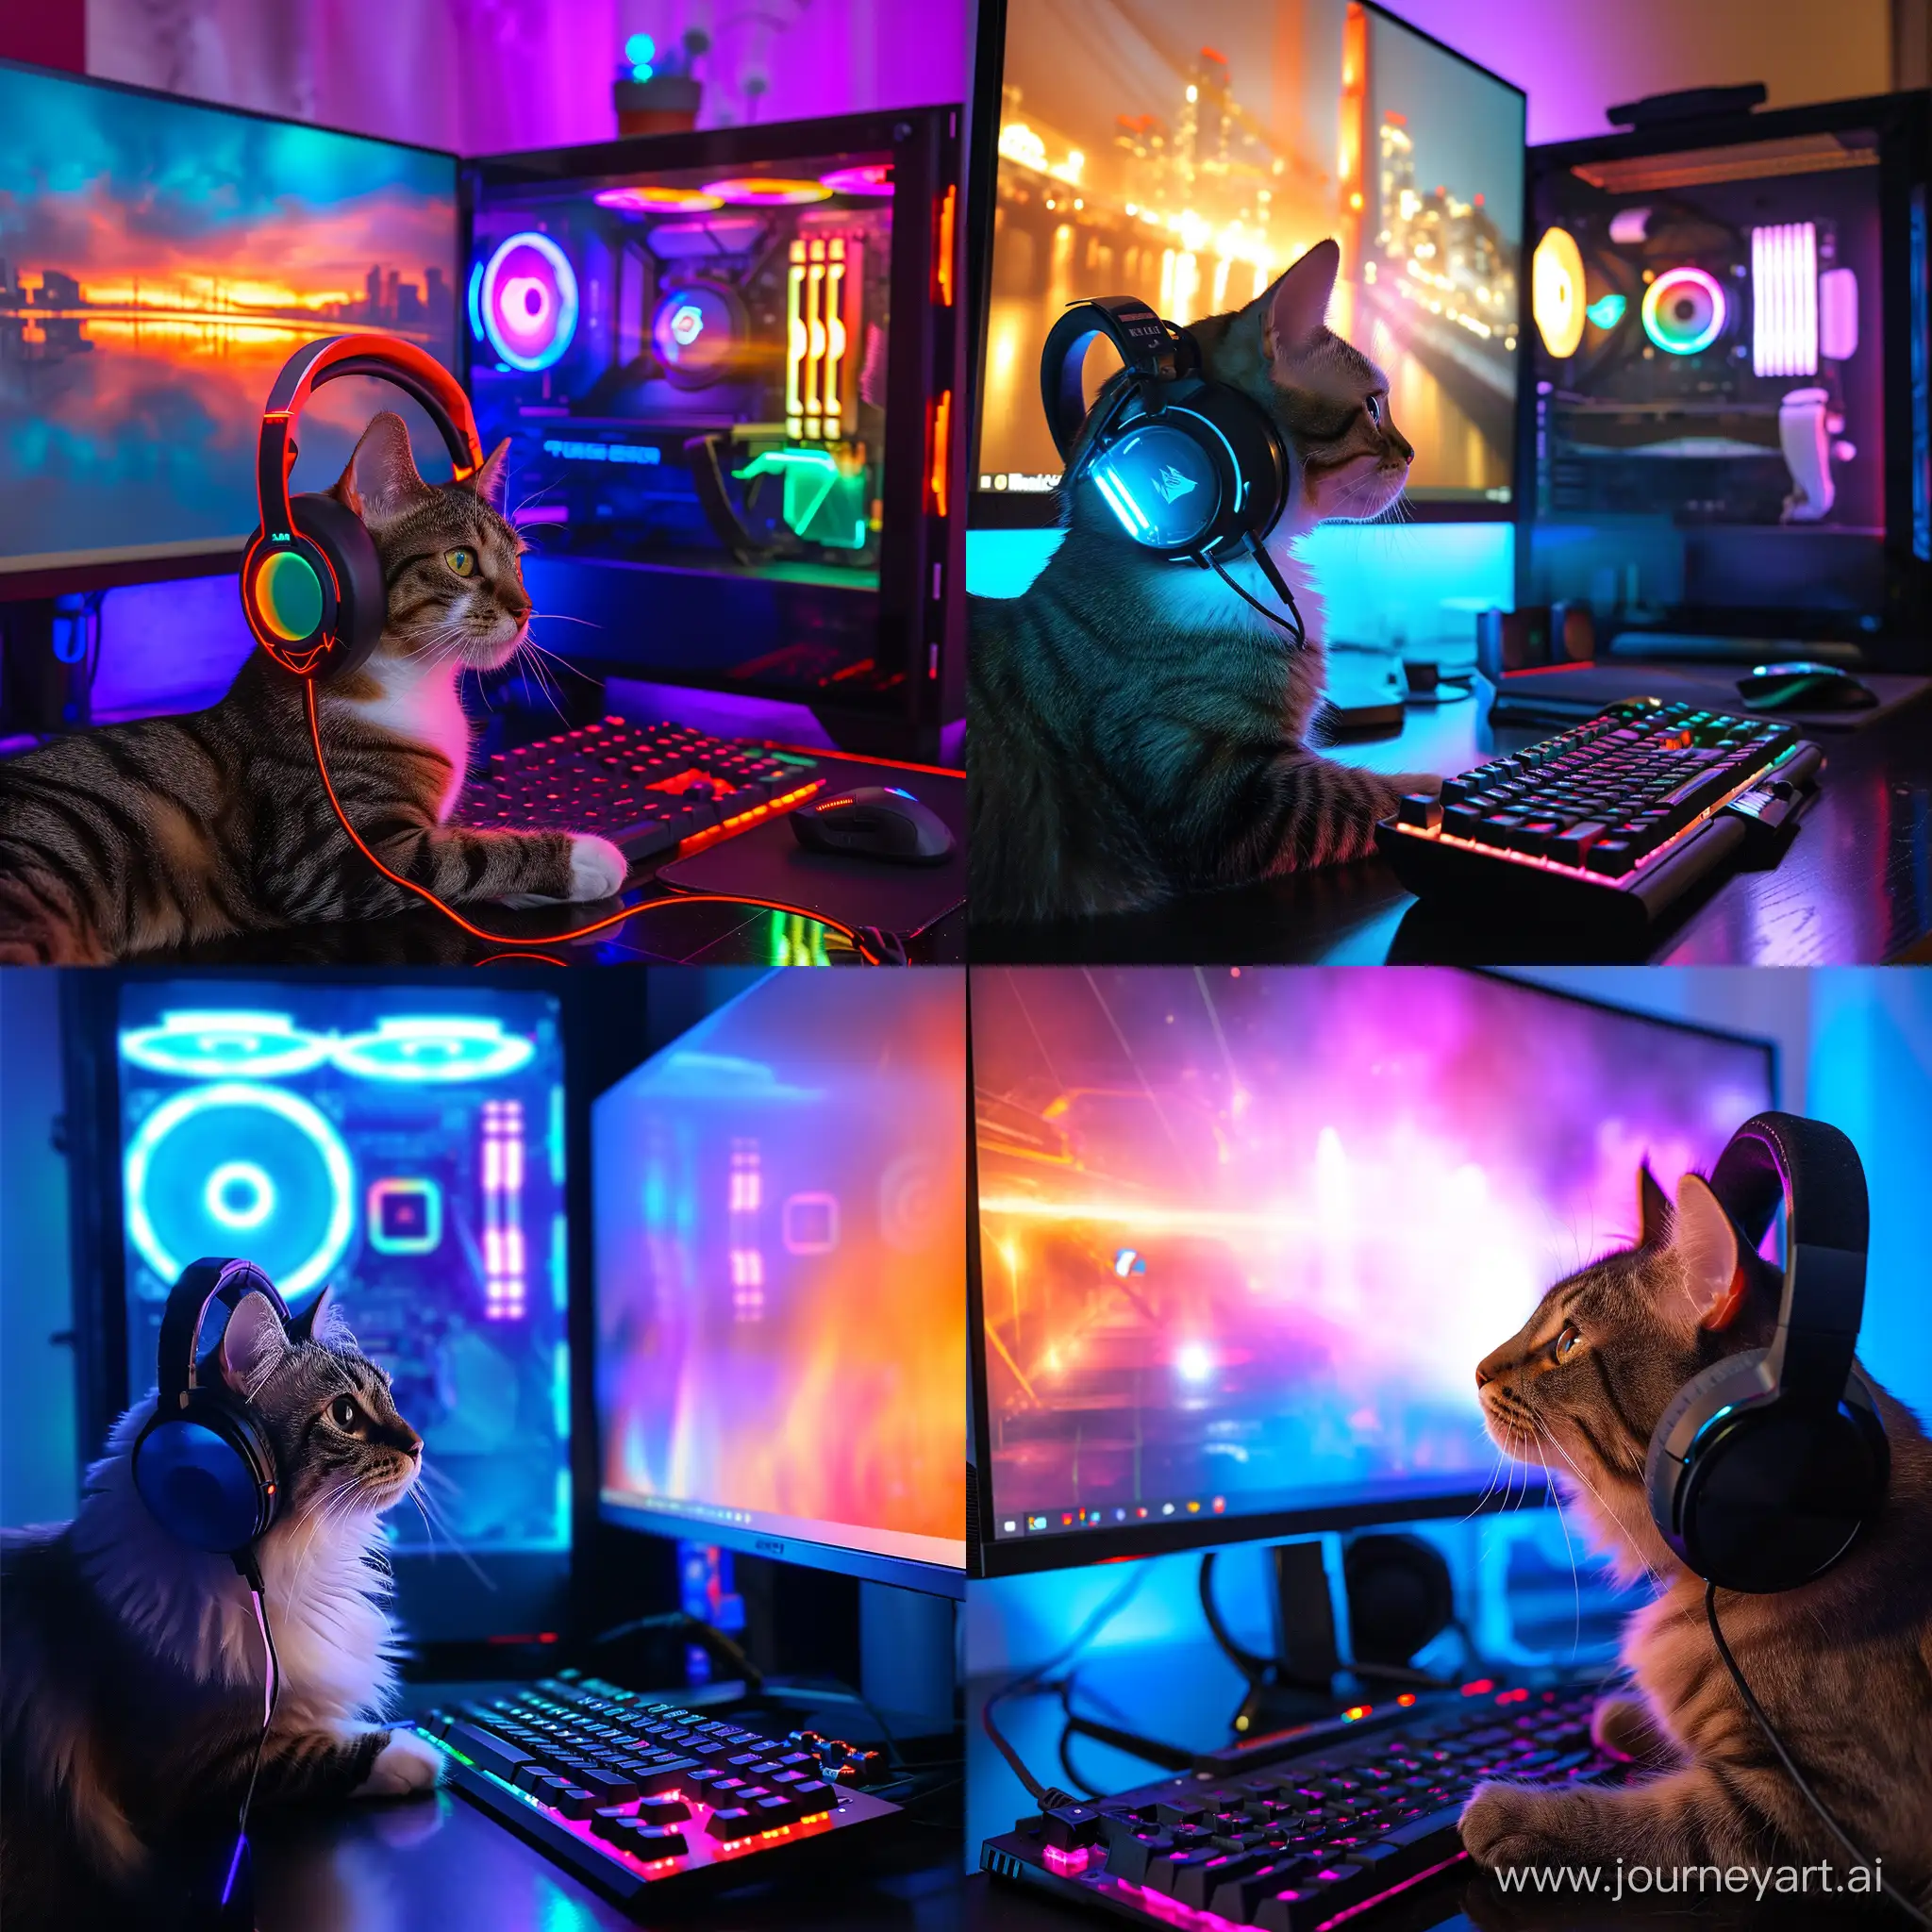 крутой кот в  наушниках c RGB подсветкой играет в компьютер с большим монитором и RGB подсветкой